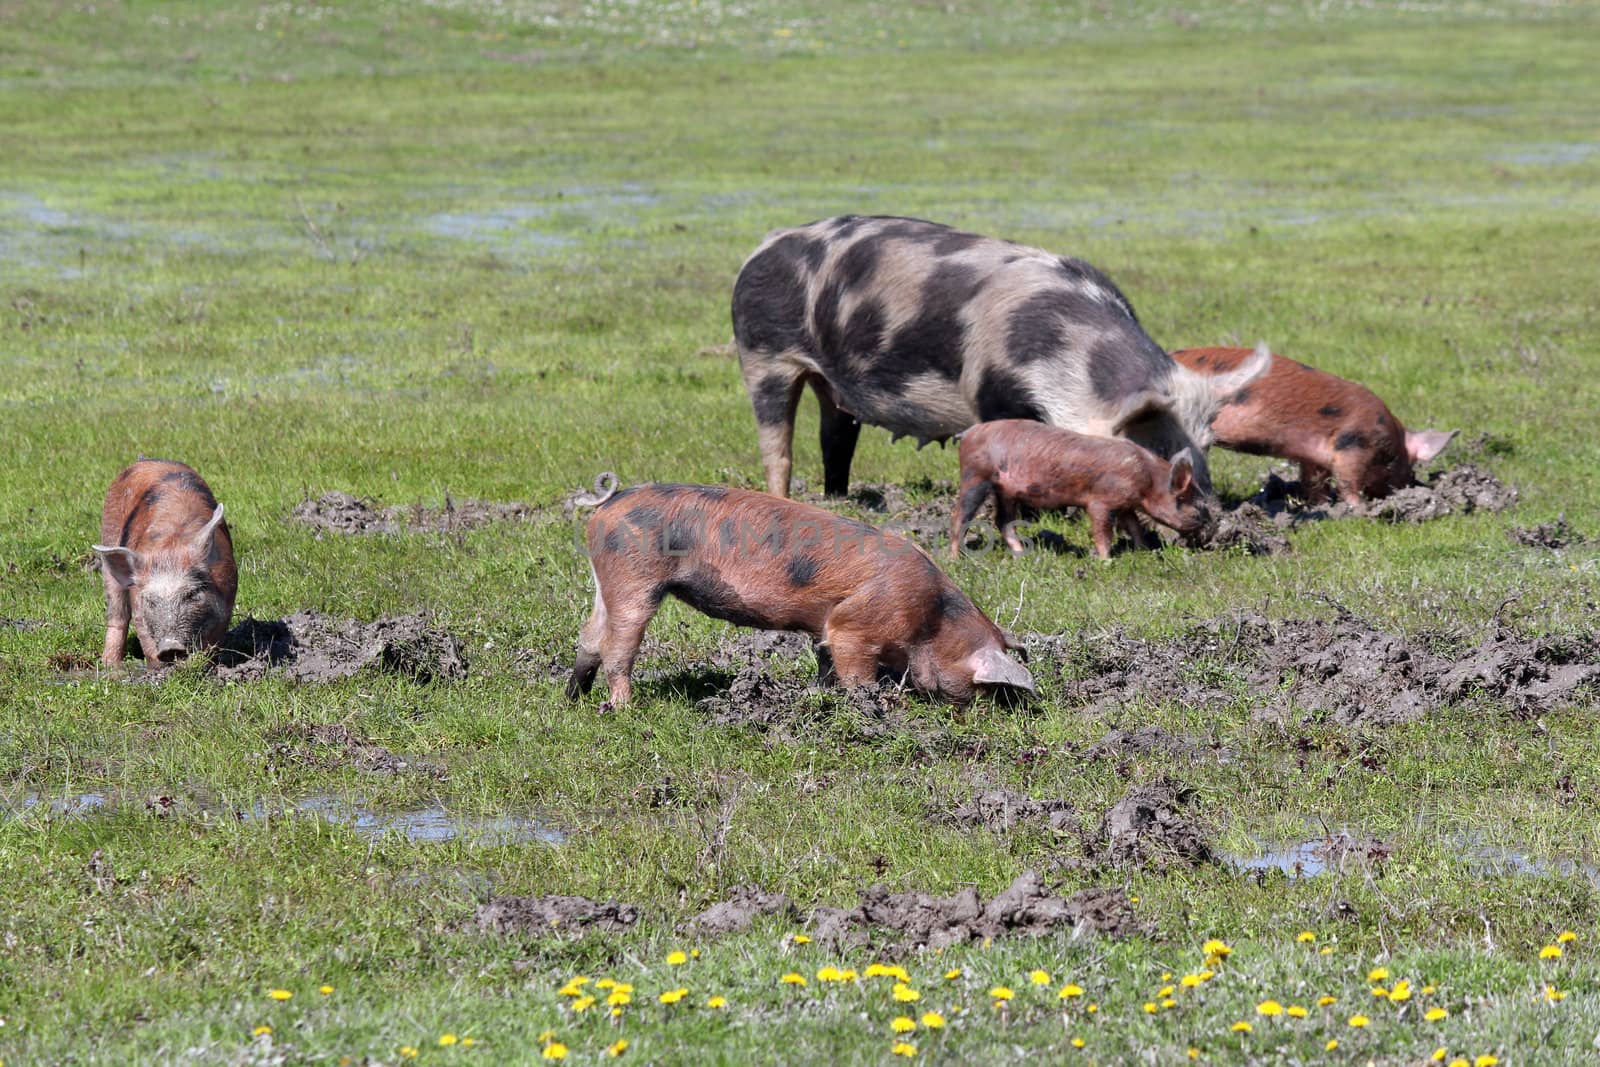 pigs in a mud farm scene by goce